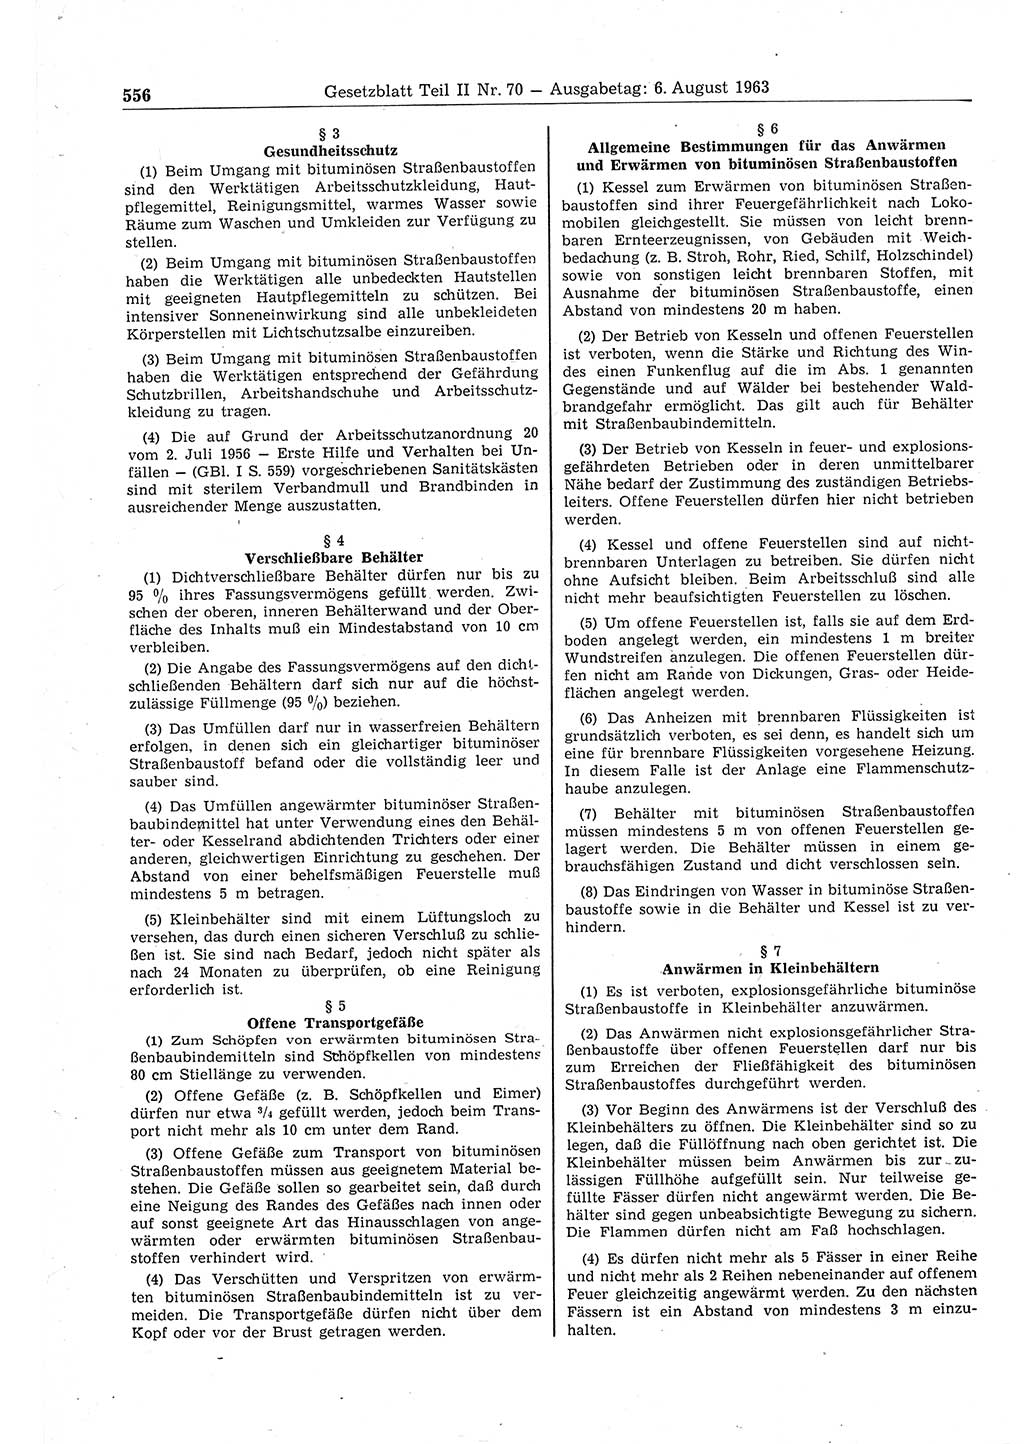 Gesetzblatt (GBl.) der Deutschen Demokratischen Republik (DDR) Teil ⅠⅠ 1963, Seite 556 (GBl. DDR ⅠⅠ 1963, S. 556)